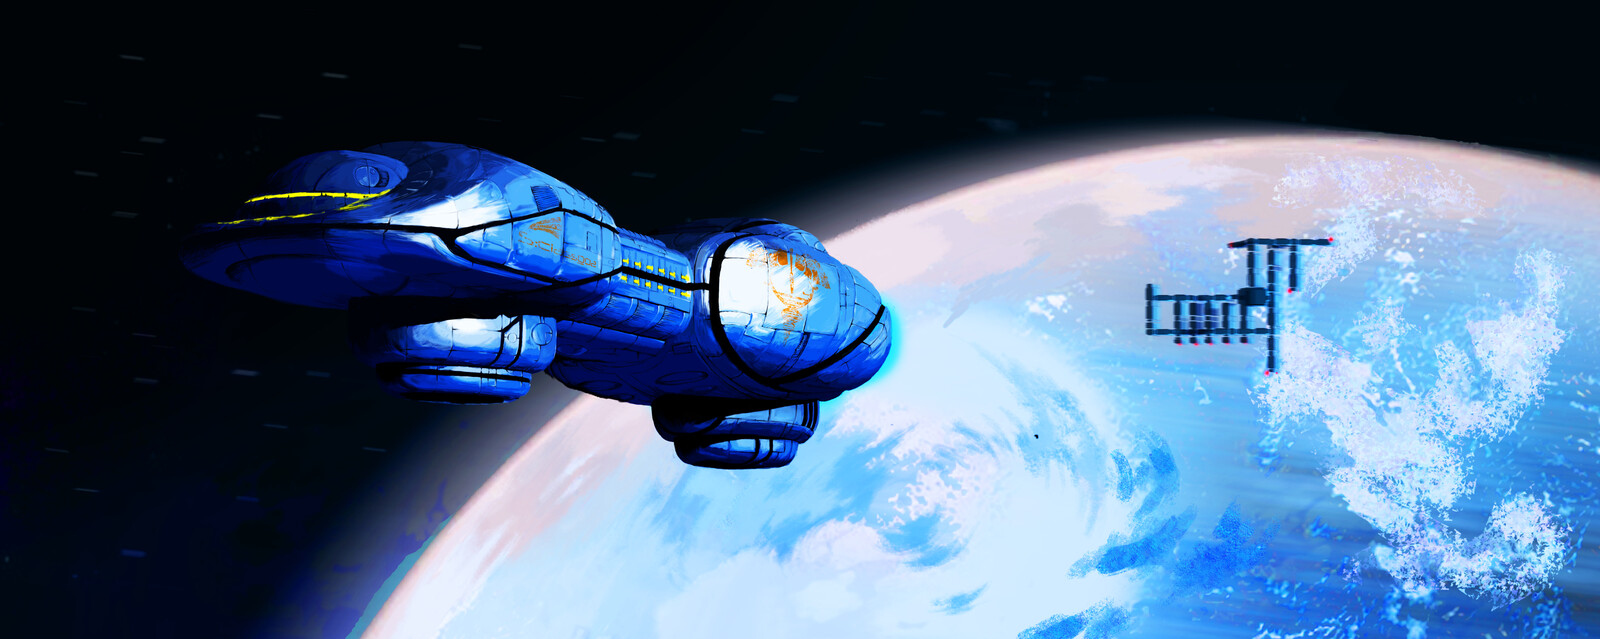 Digital painting of spaceship leaving orbit 